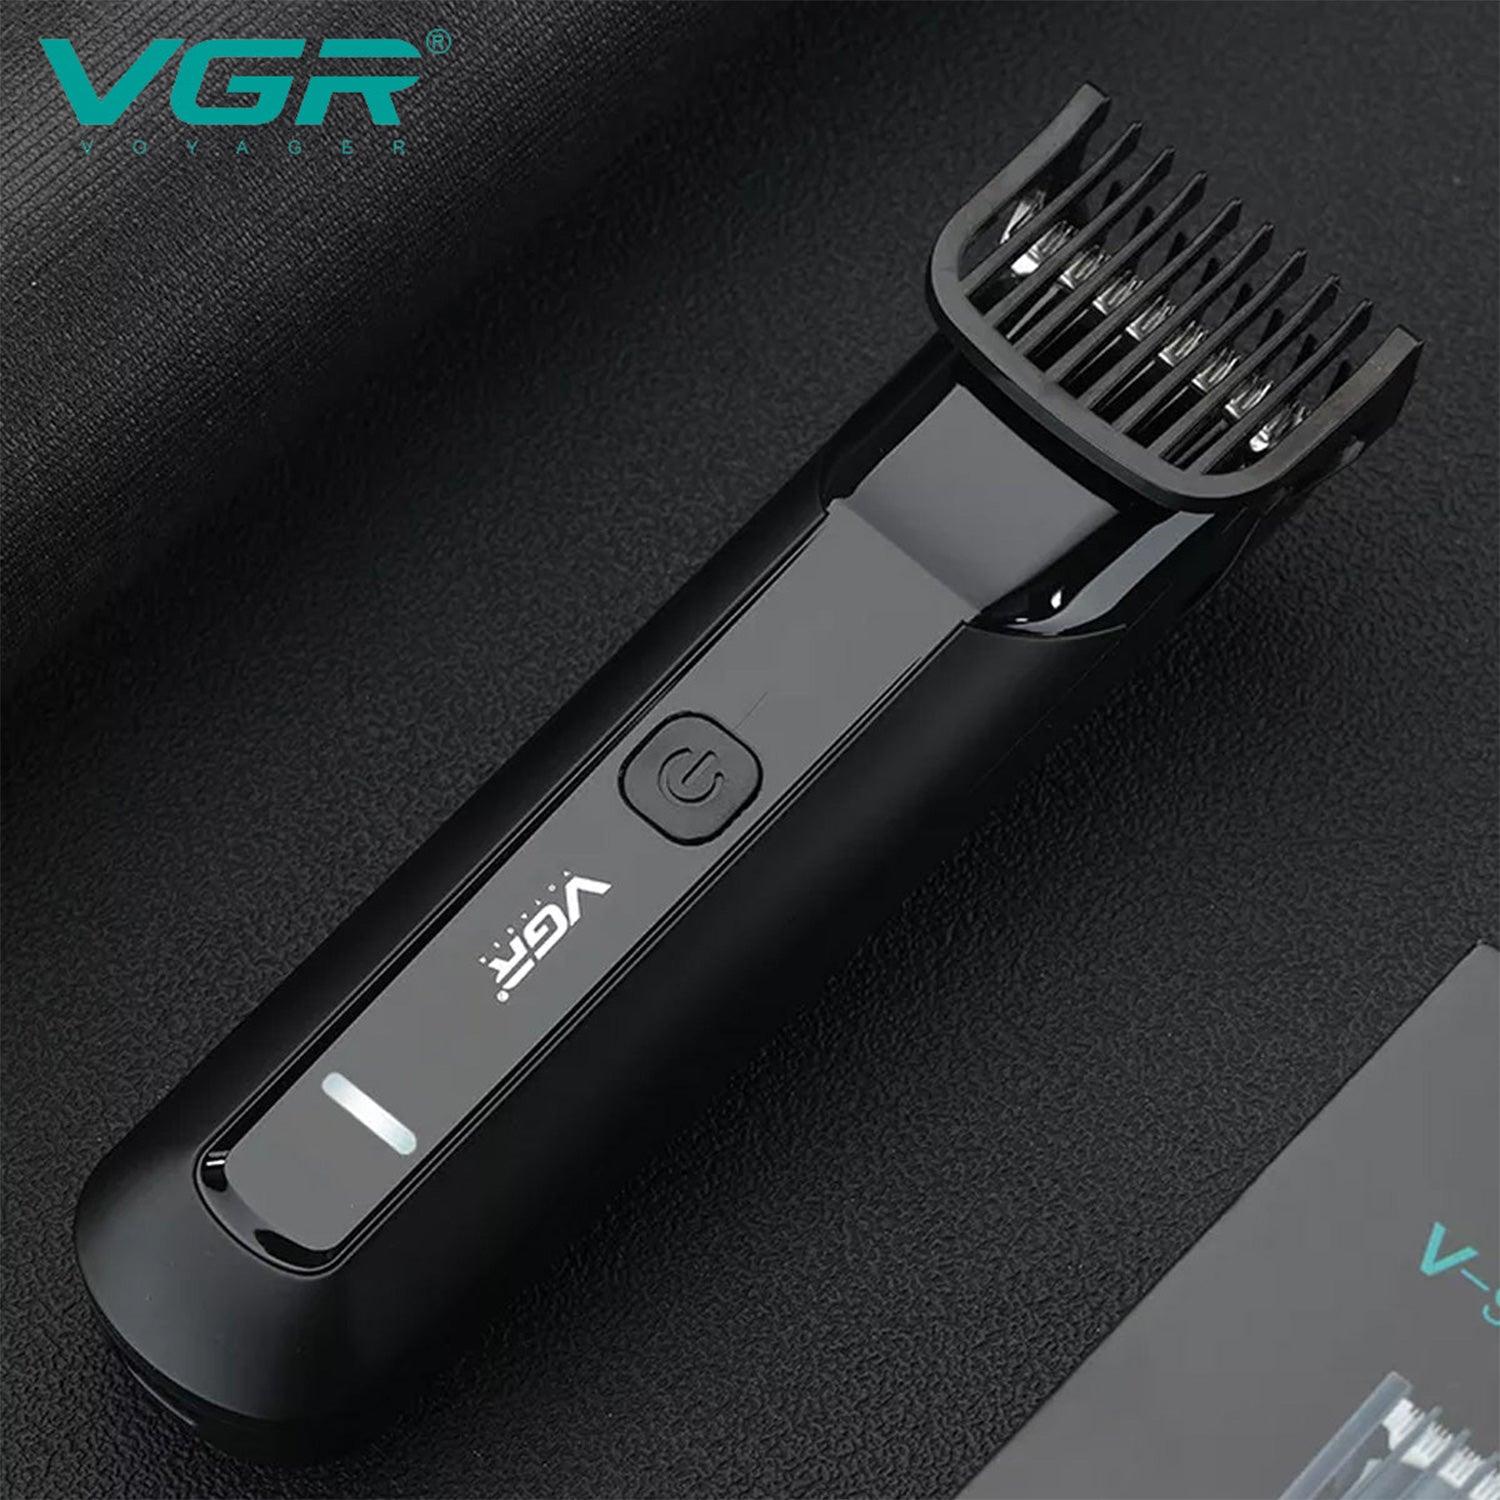 VGR V-928 Hair Trimmer For Men, Black